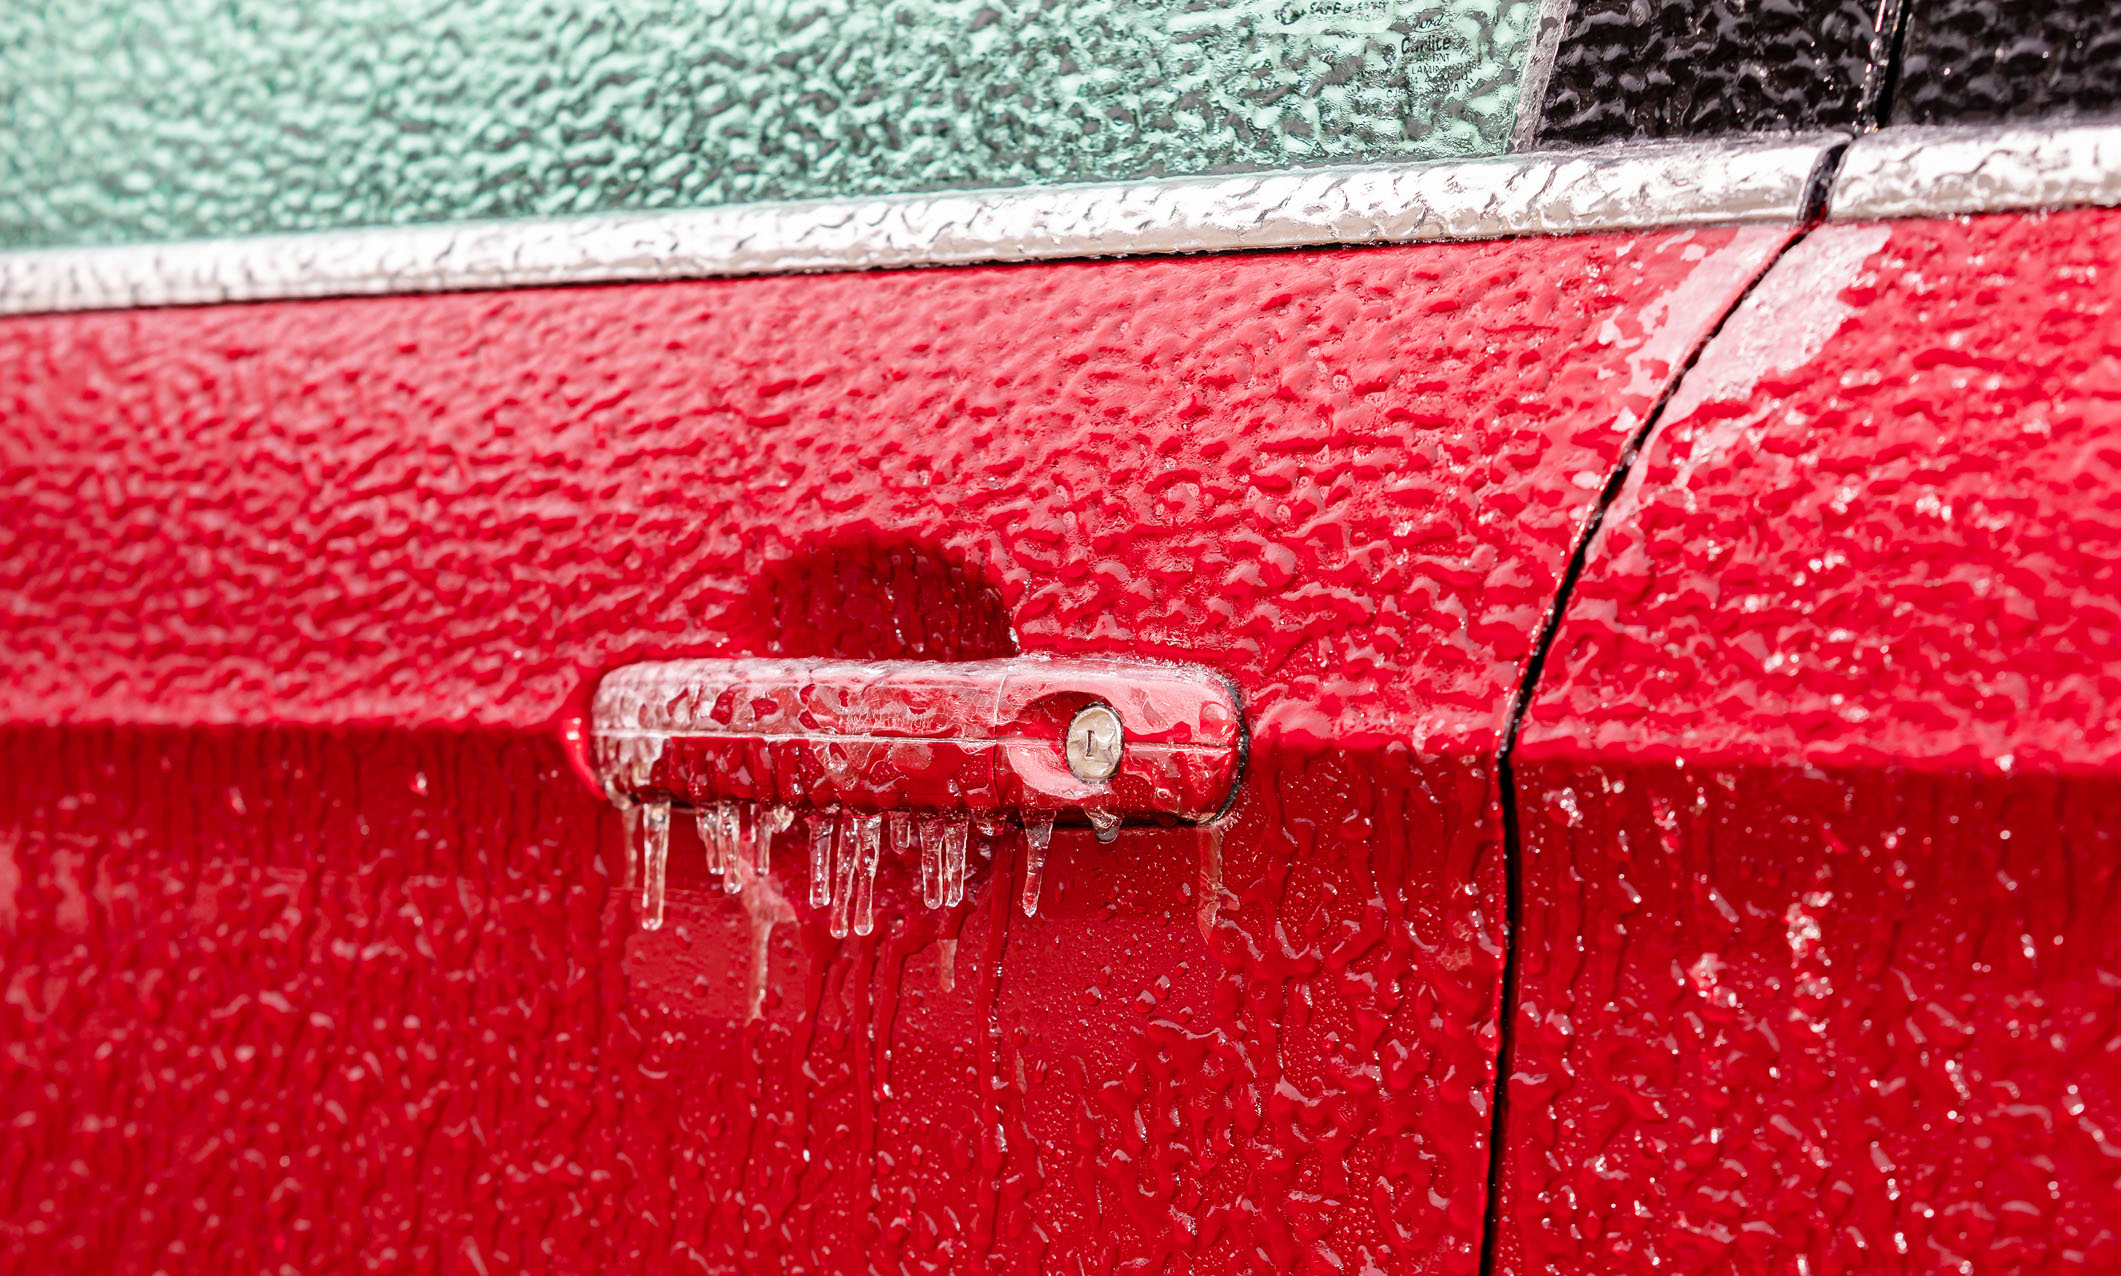 Autotür zugefroren: Was hilft? Tipps und Hausmittel